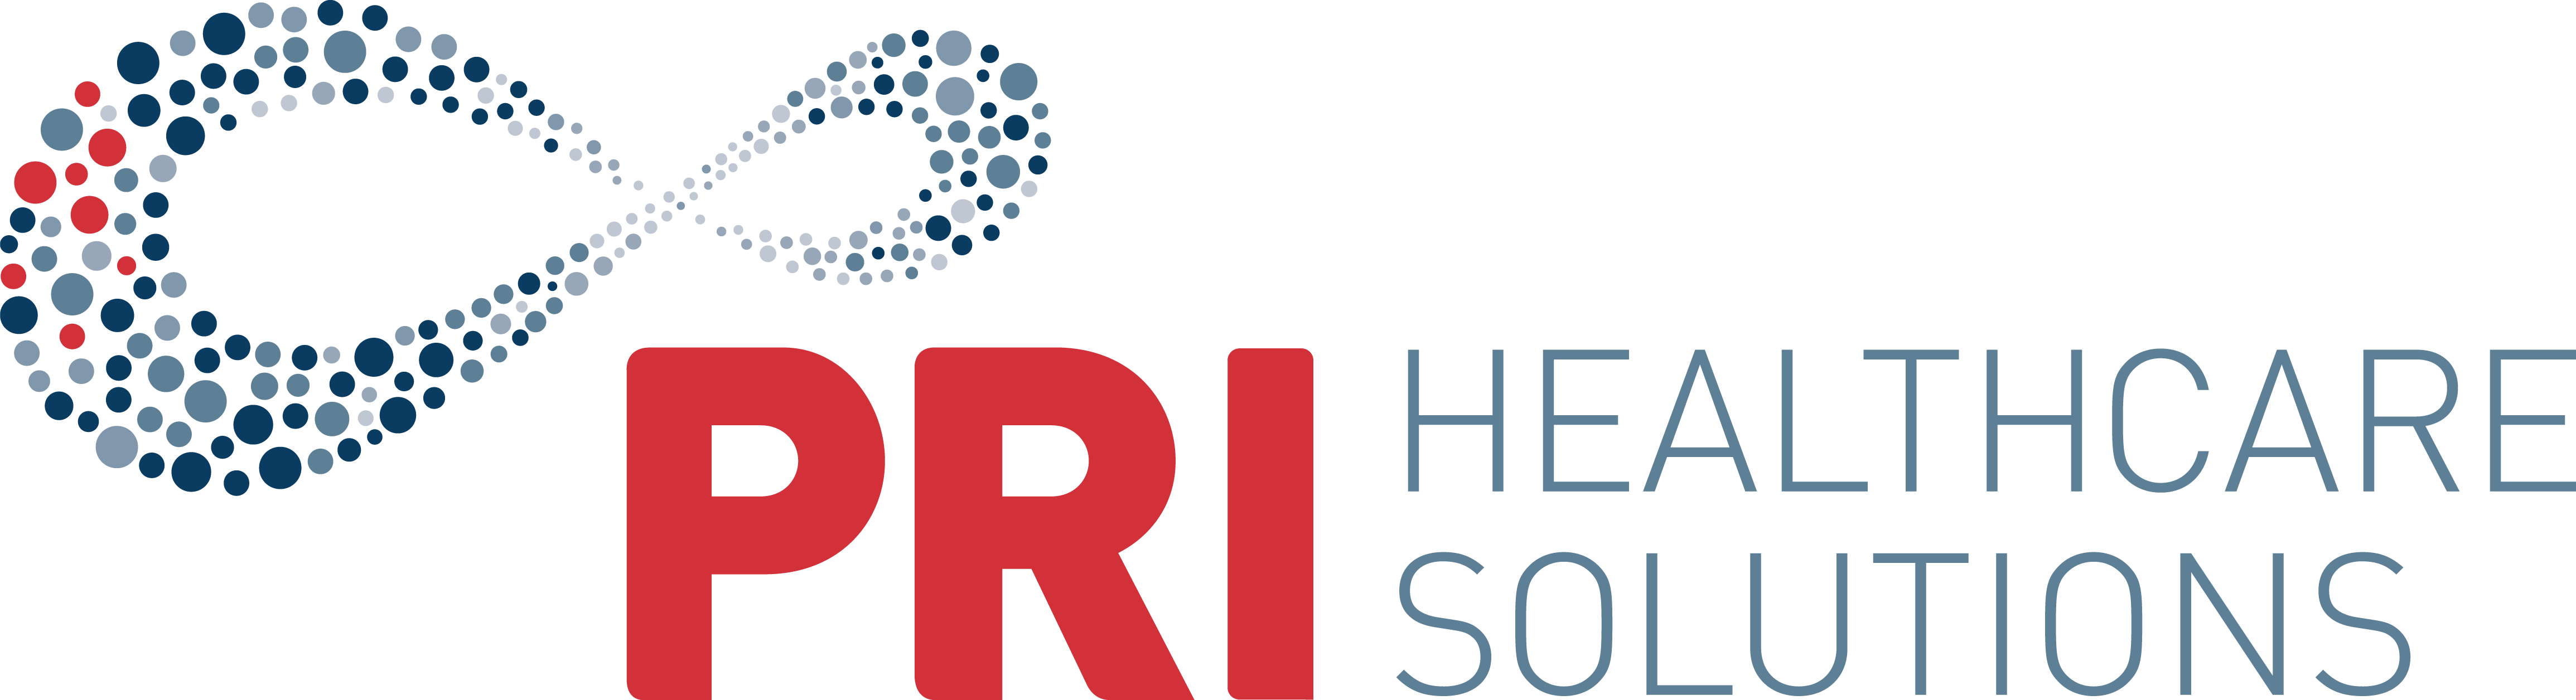 PRI Healthcare Solutions